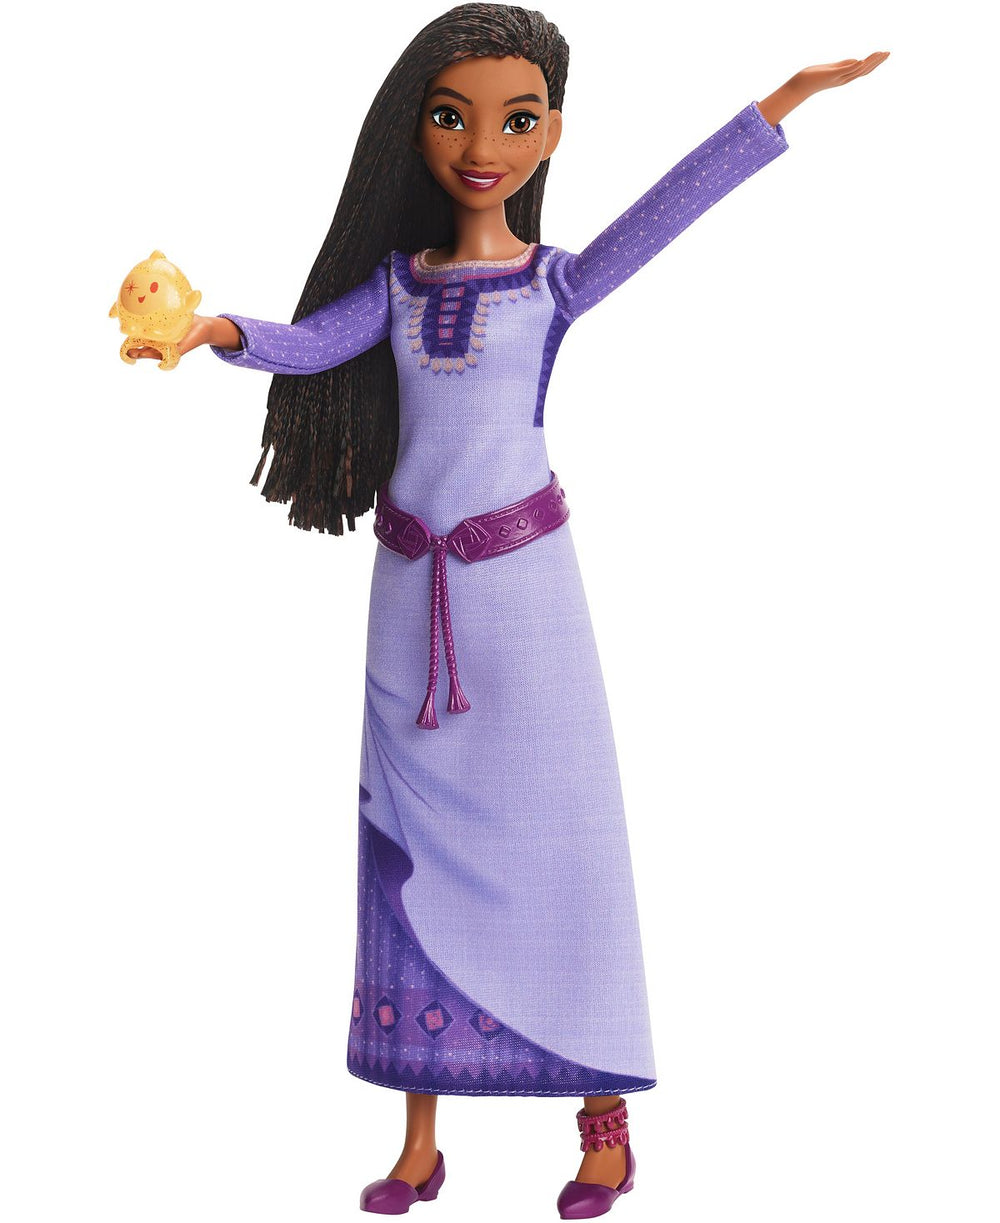 Disney Wish - Singing Asha Fashion Doll with Star Figure